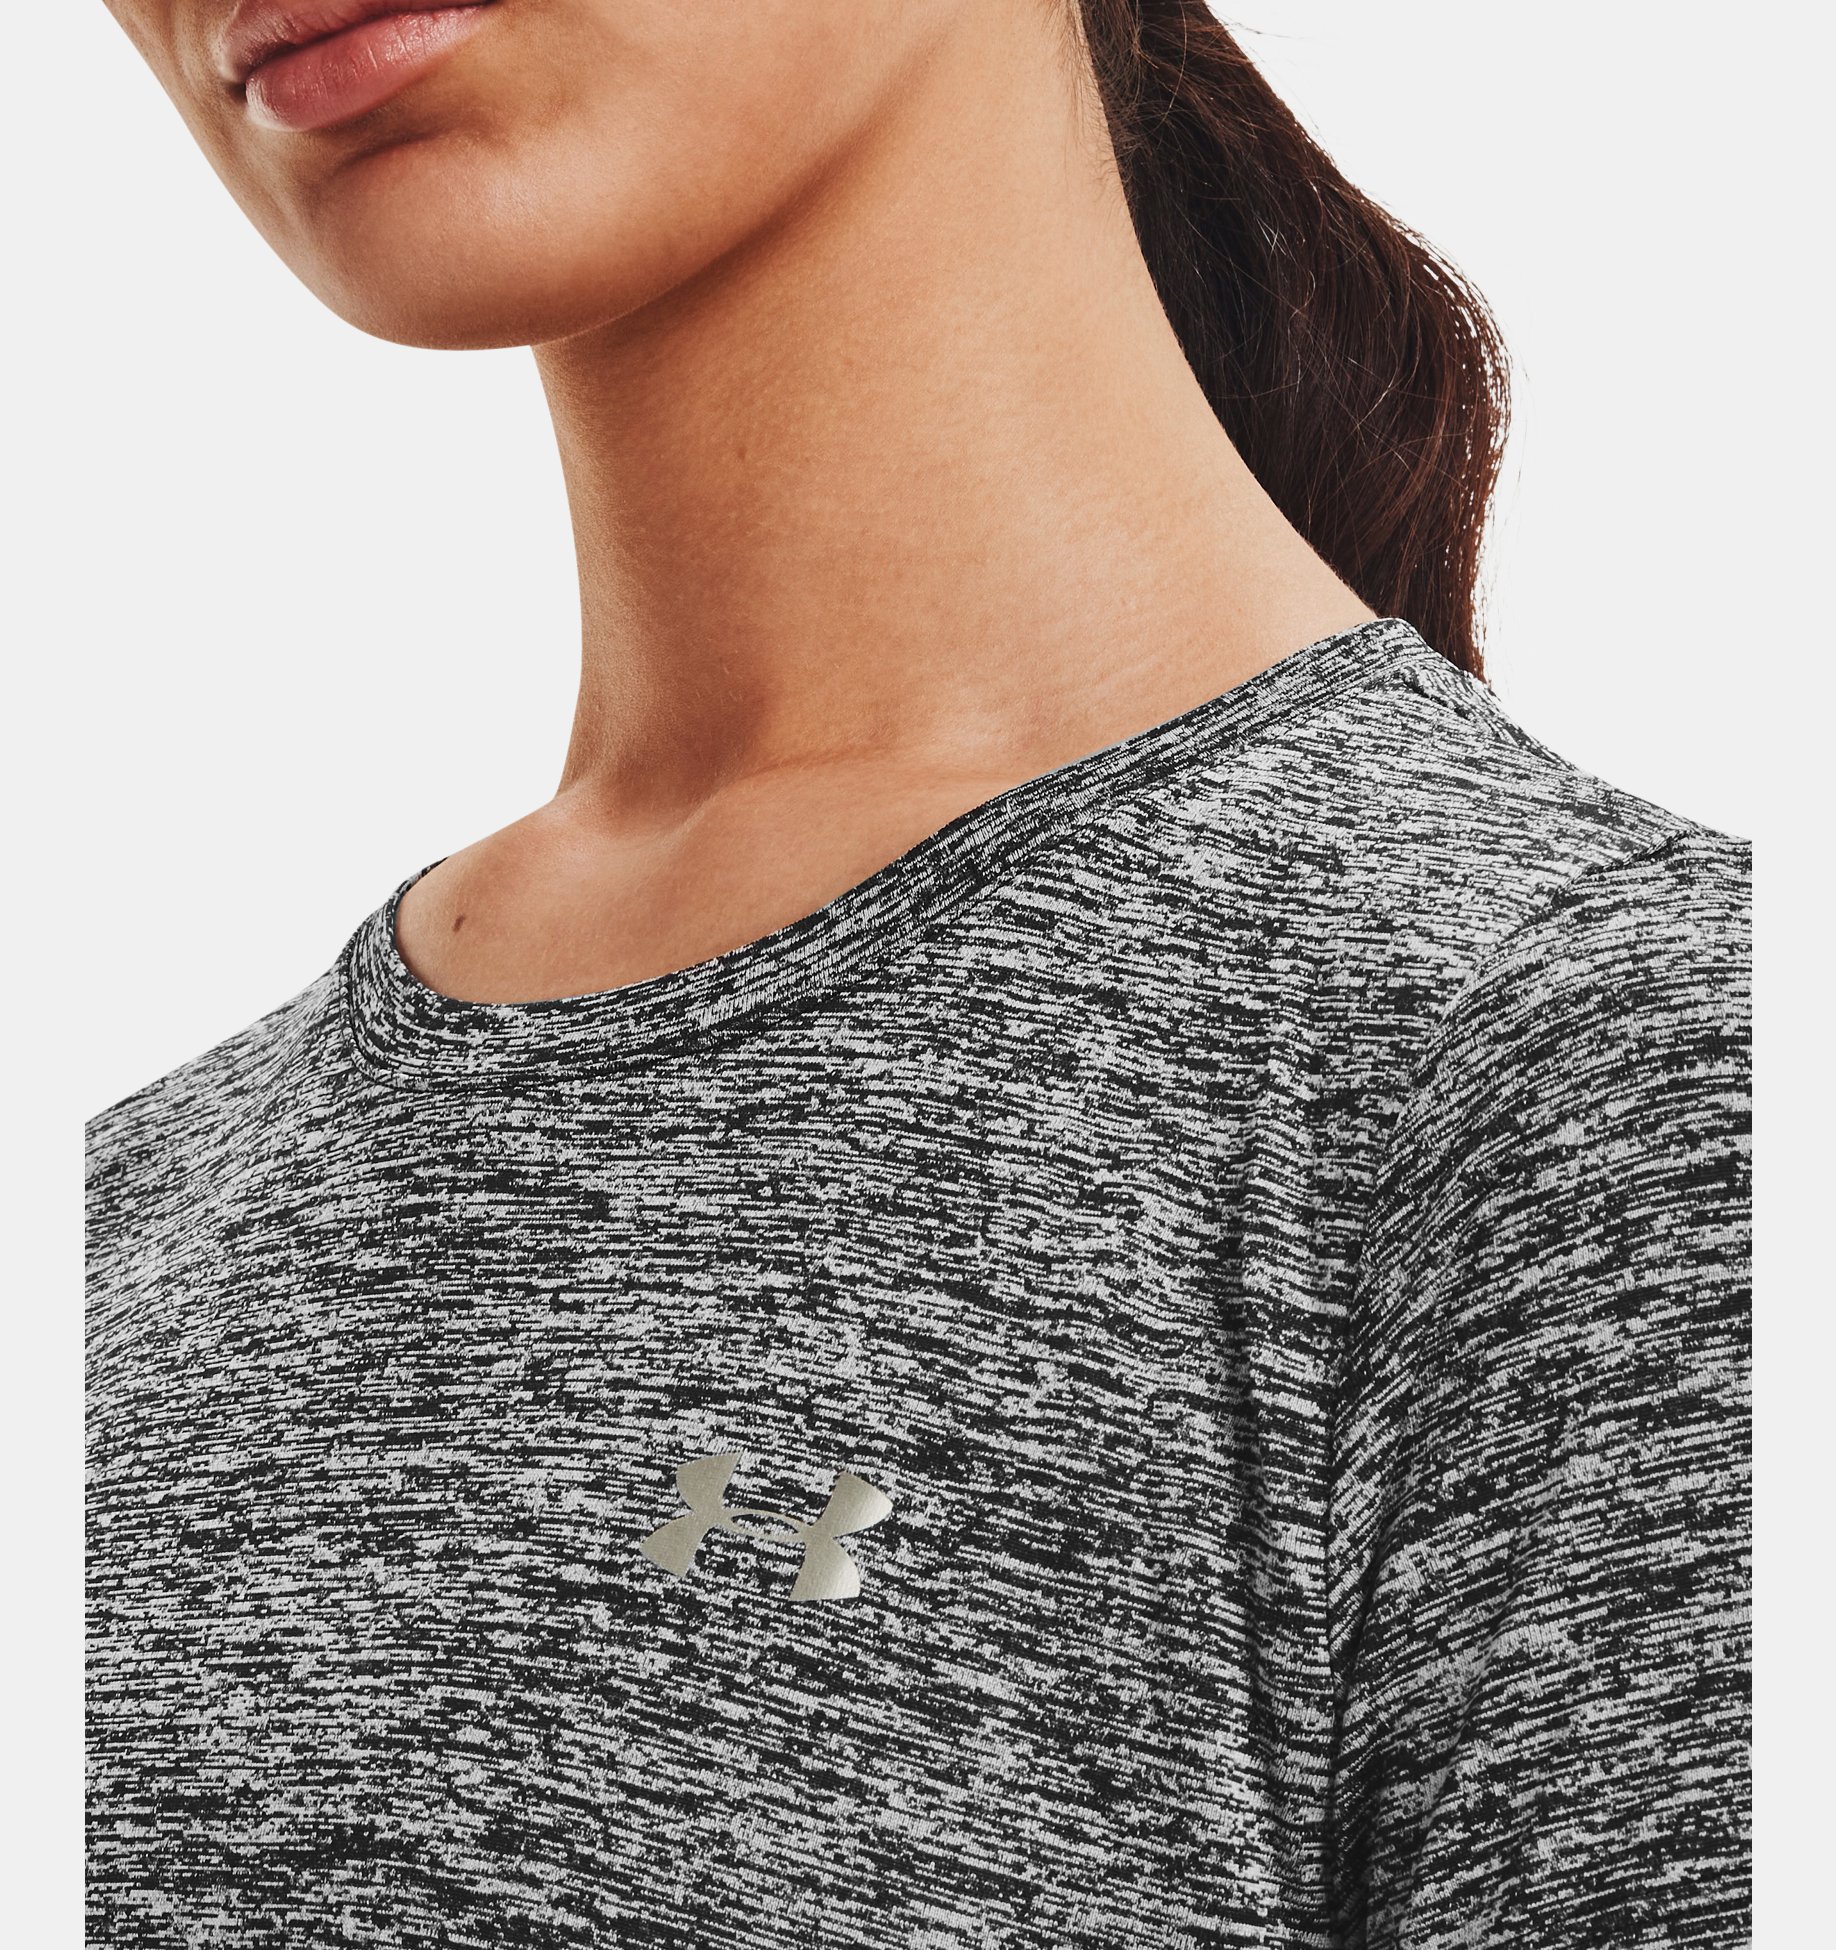 Women's UA Tech™ Twist T-Shirt | Under Armour